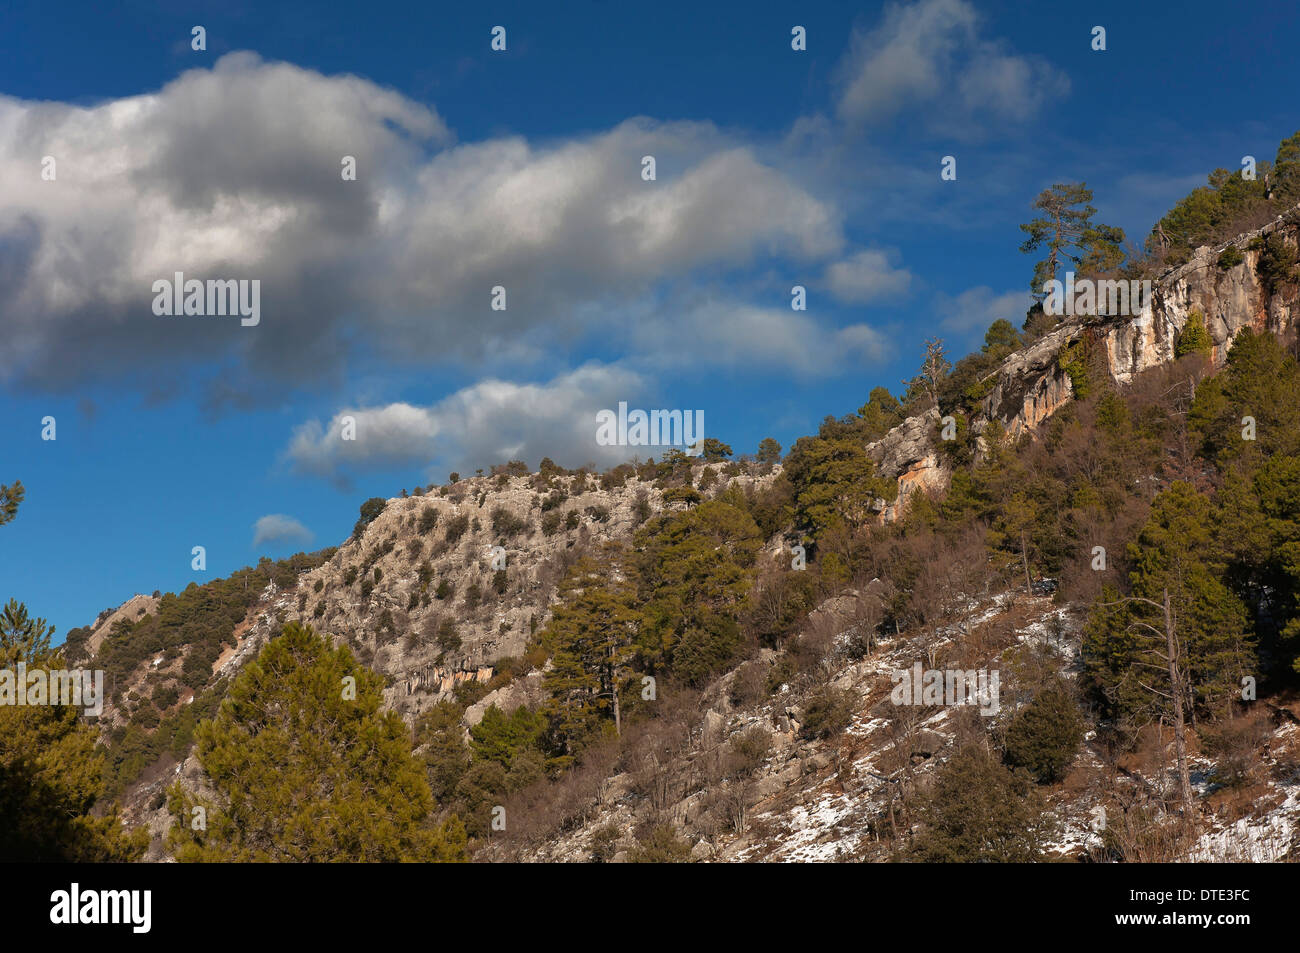 Paesaggio roccioso, Parco Naturale Sierras de Cazorla Segura y Las Villas, Jaen-provincia, regione dell'Andalusia, Spagna, Europa Foto Stock